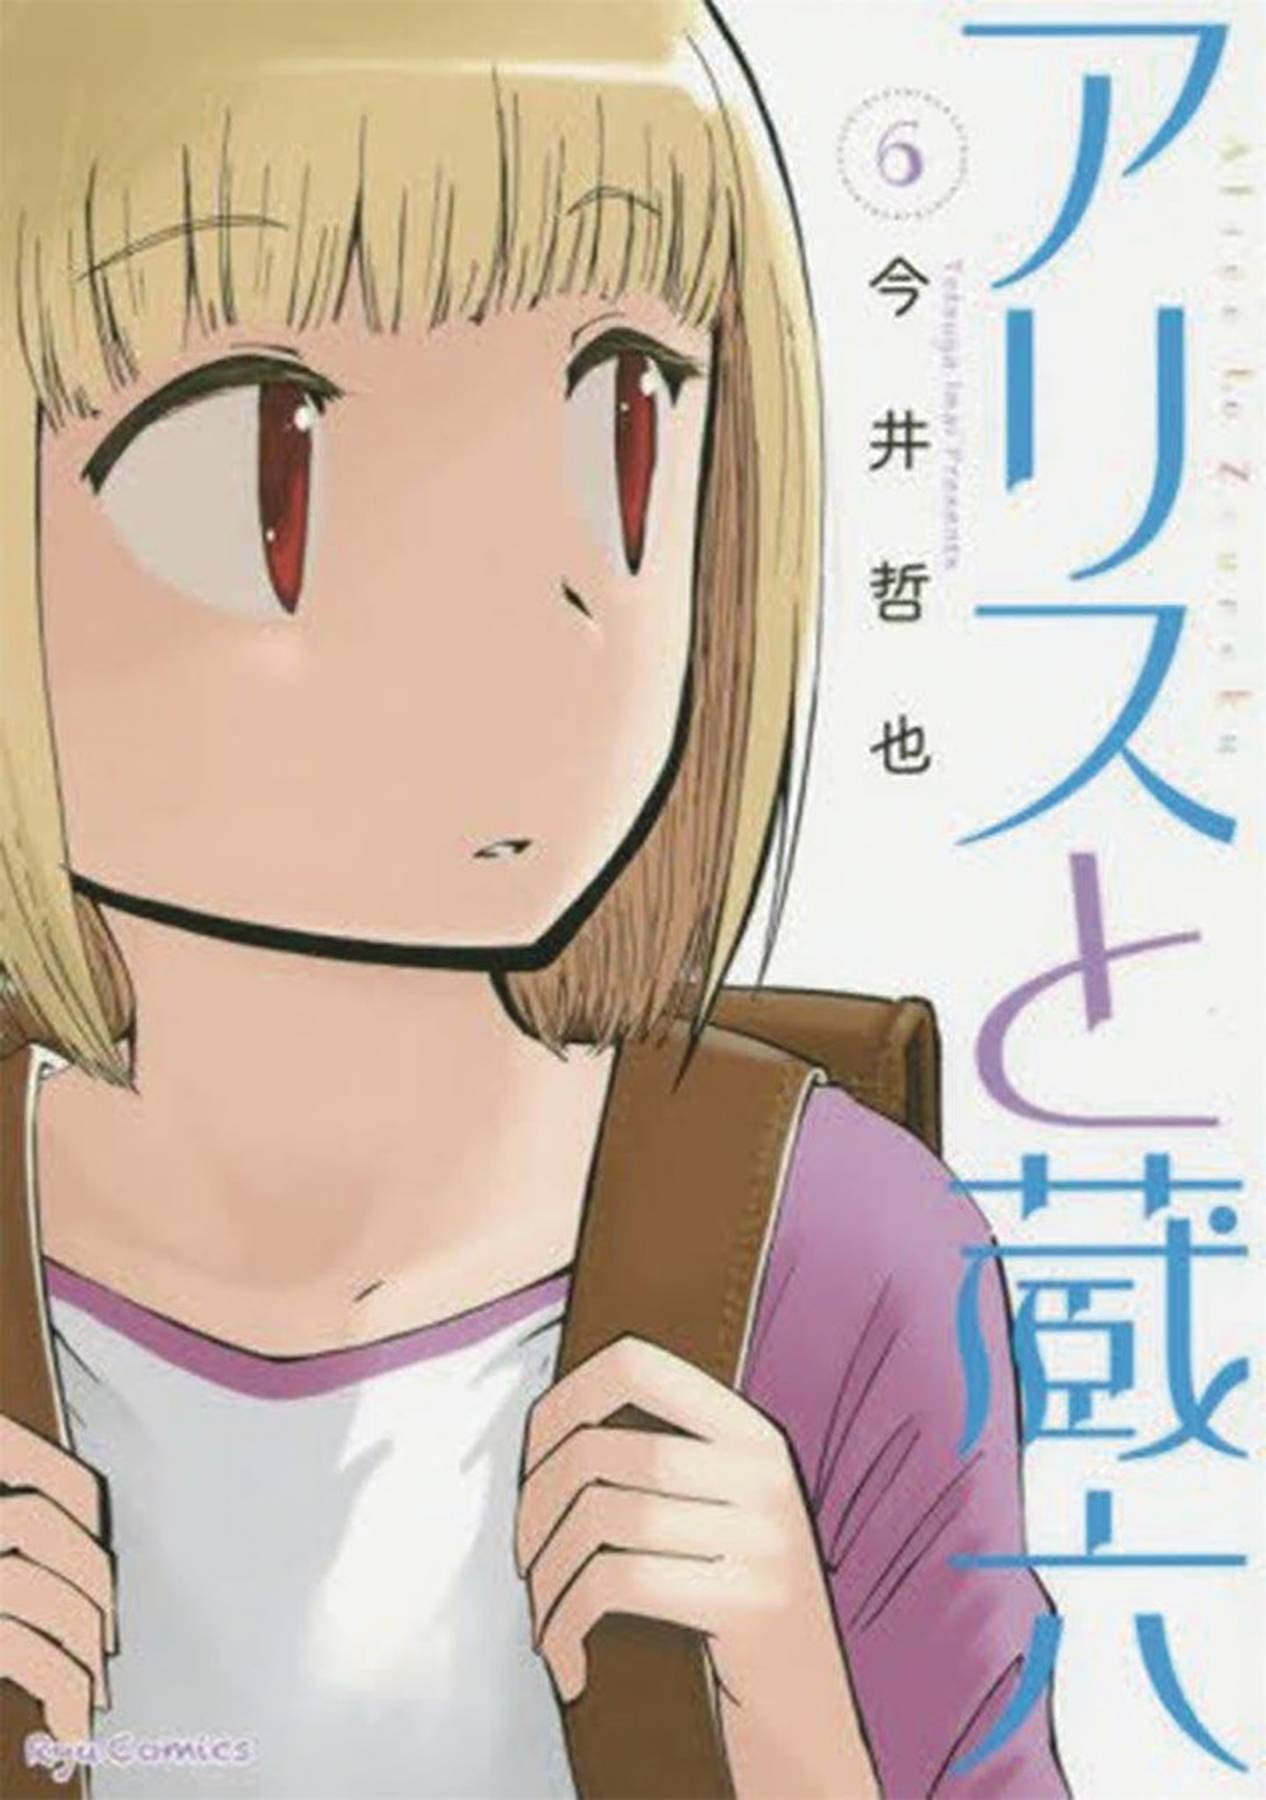 Alice & Zoroku Manga Volume 6